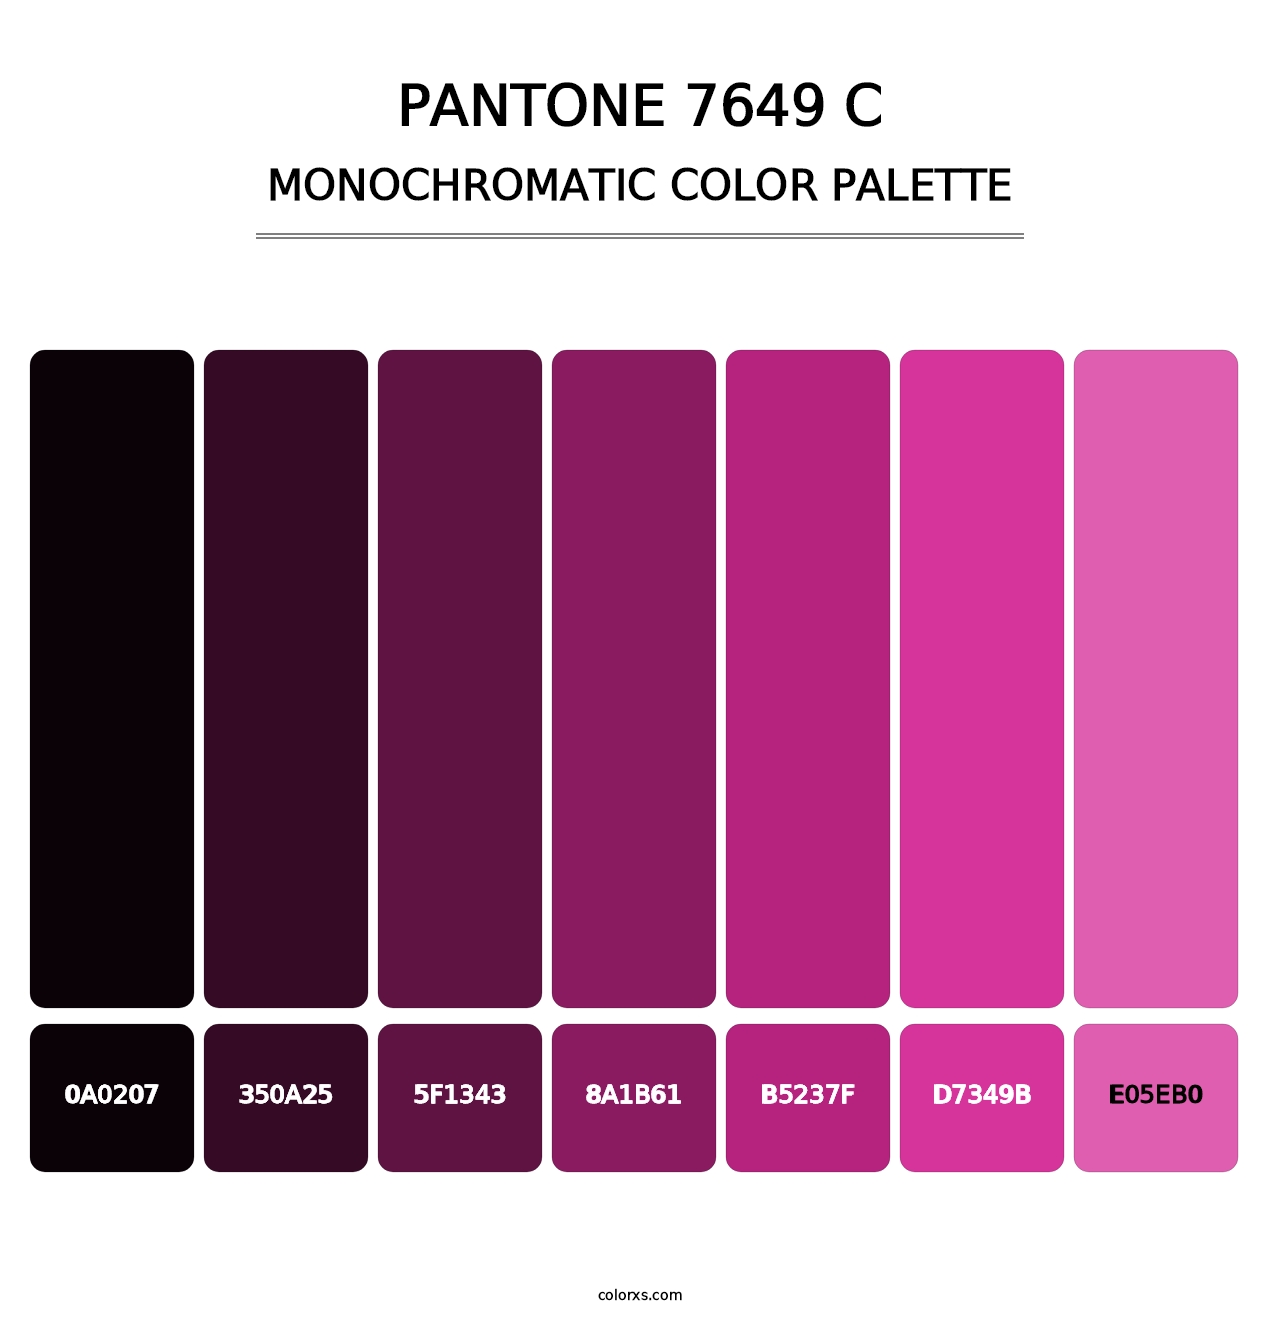 PANTONE 7649 C - Monochromatic Color Palette